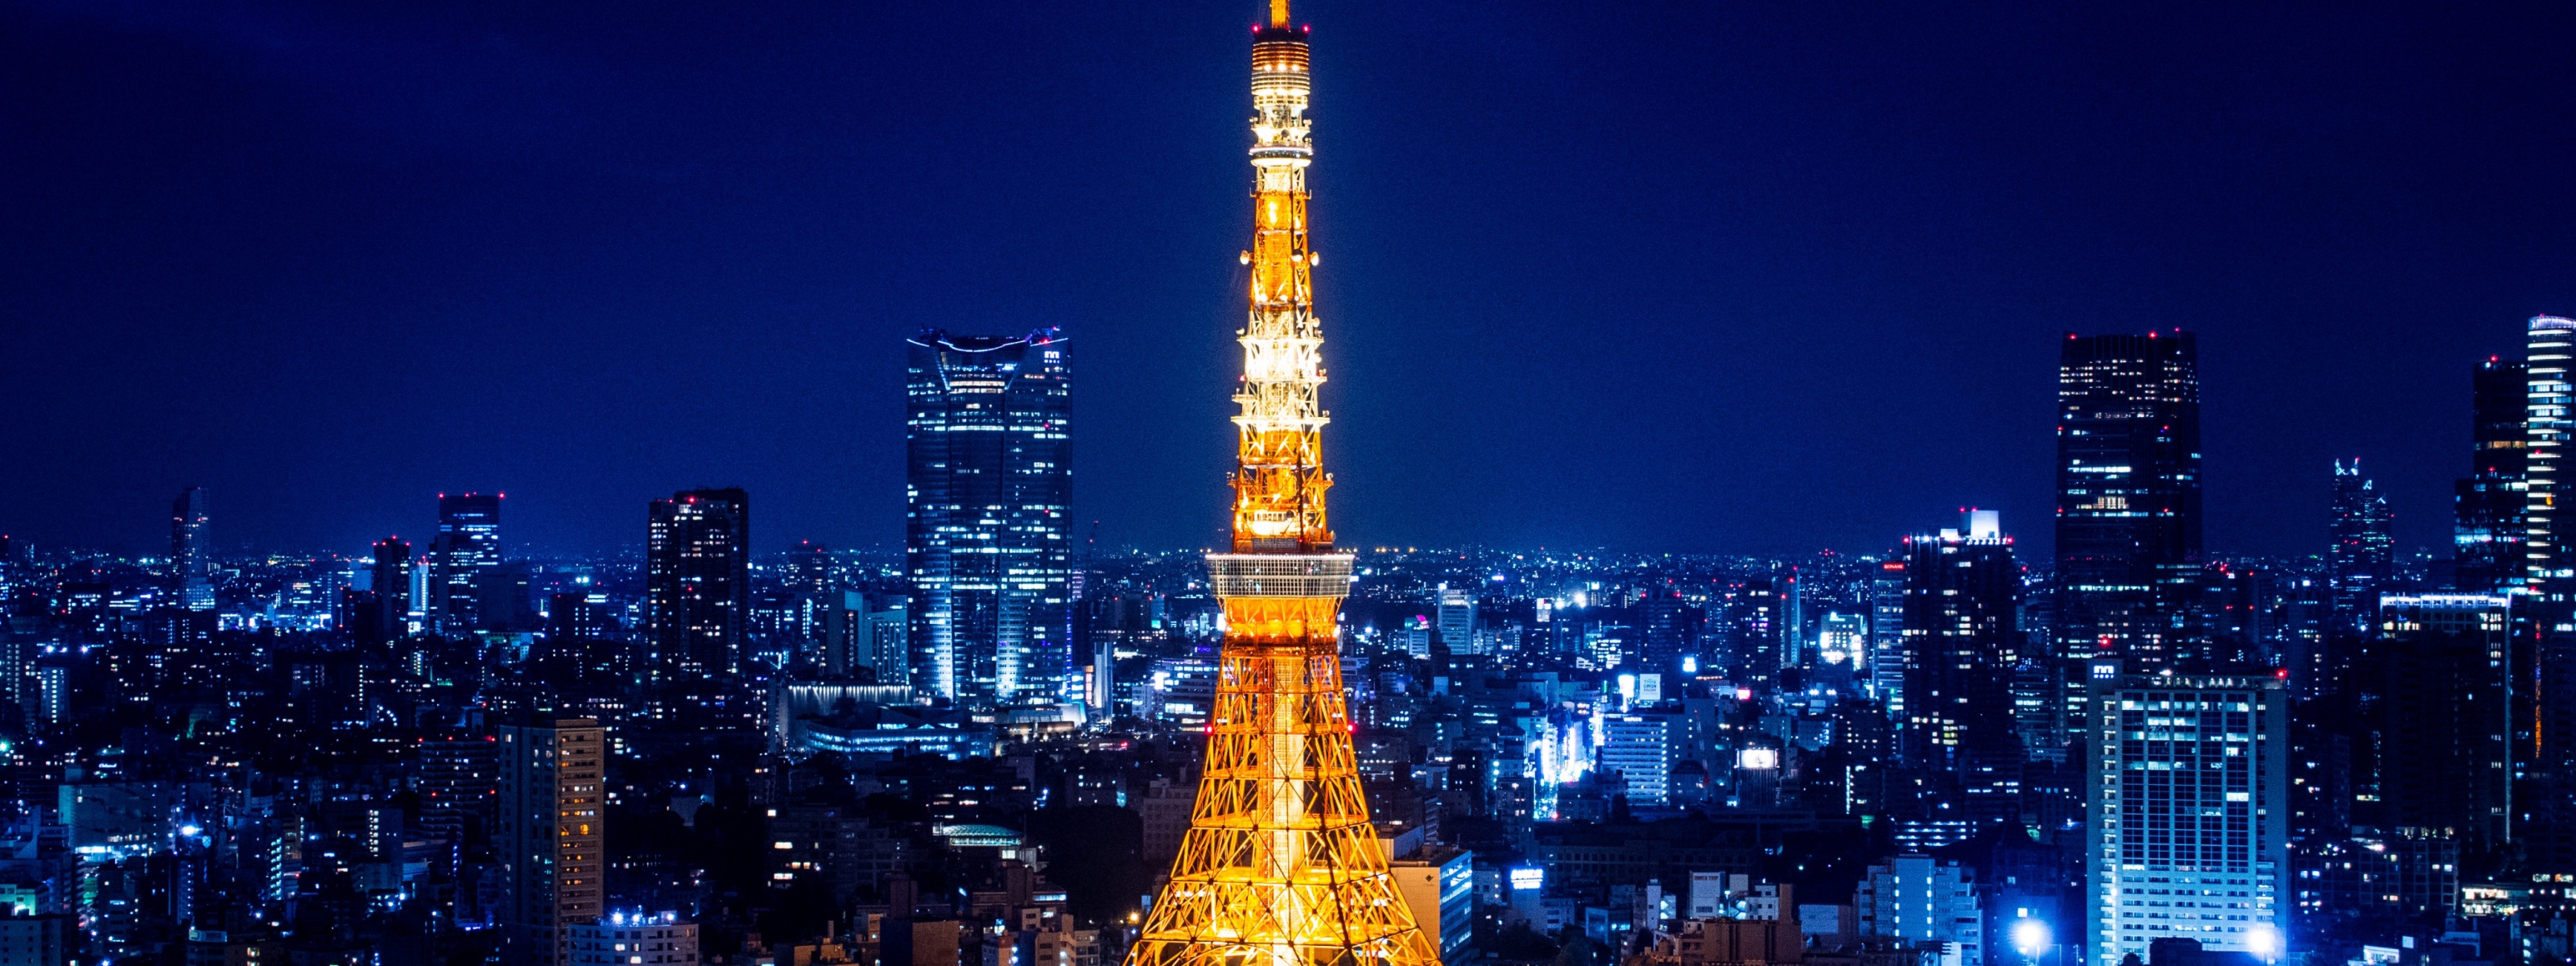 Tokyo Tower At Night